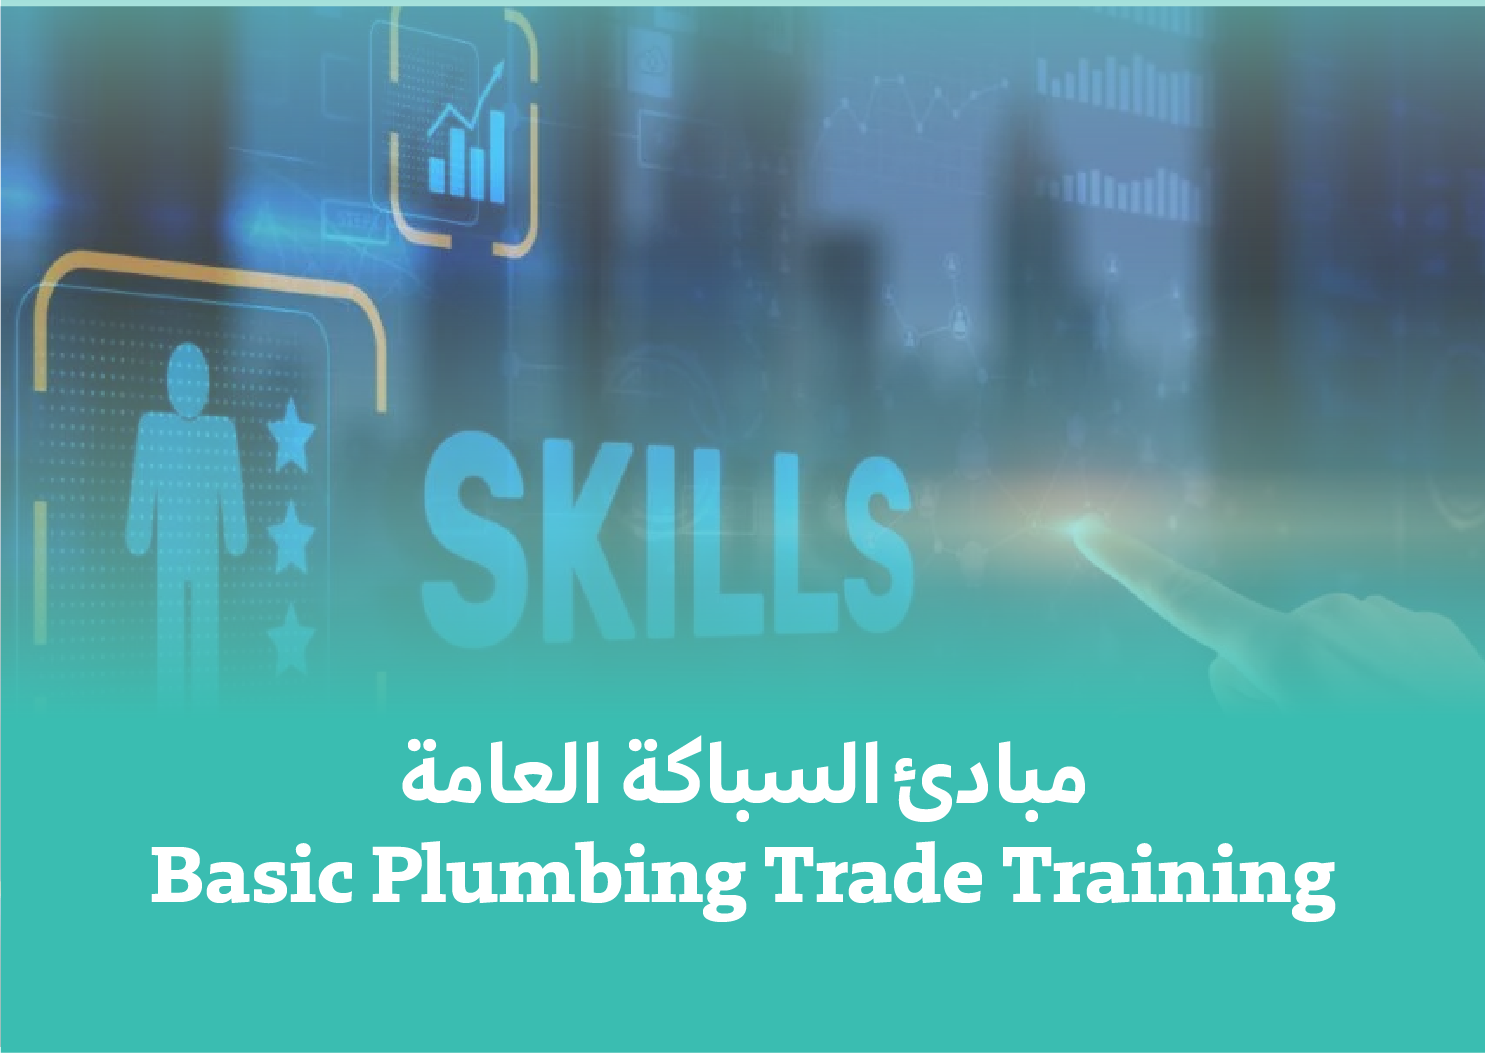 Basic Plumbing Trade Training